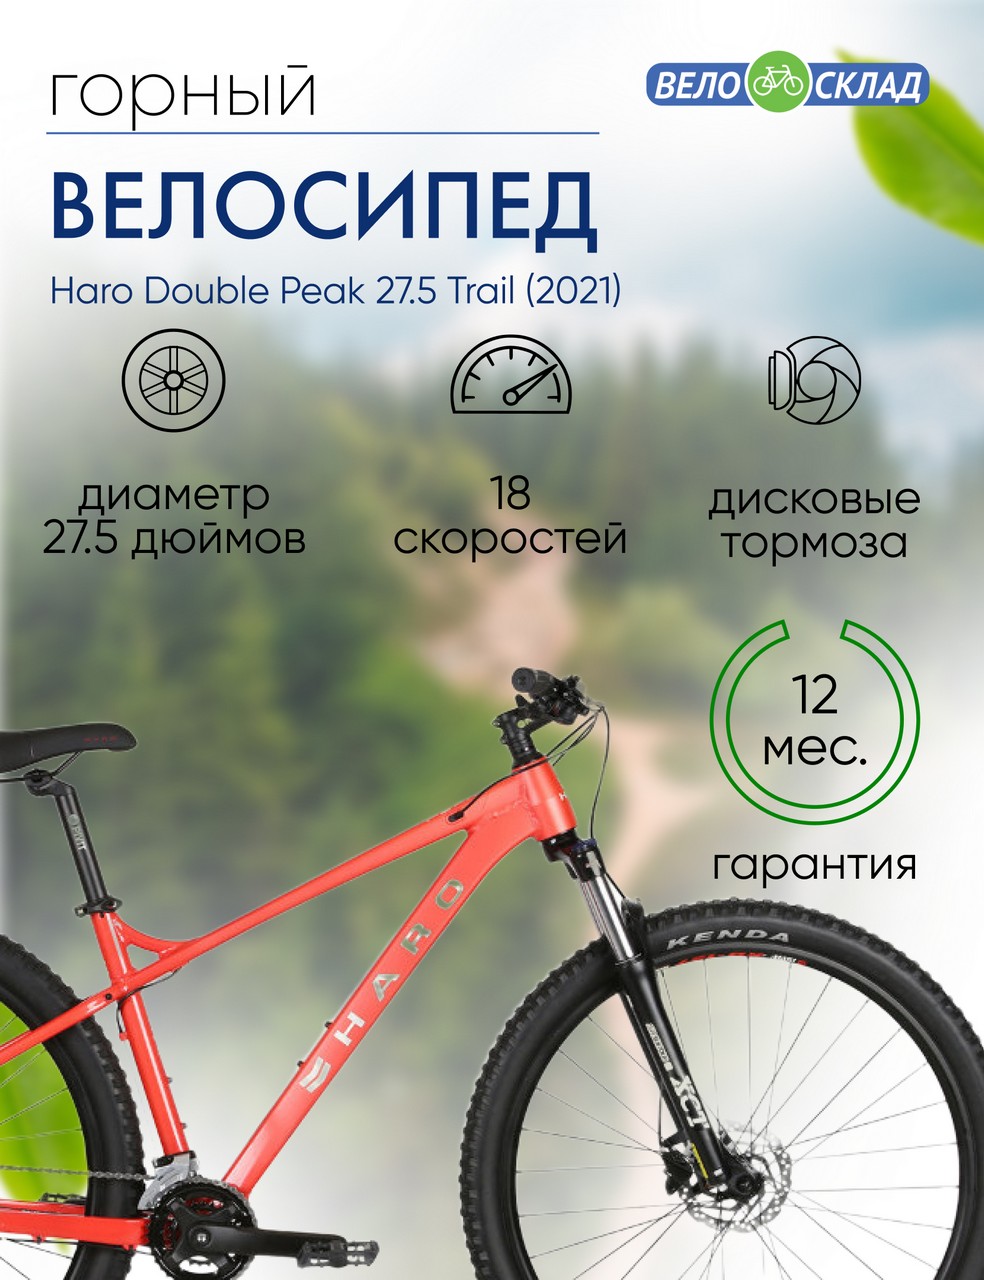 Горный велосипед Haro Double Peak 27.5 Trail, год 2021, цвет Красный, ростовка 16